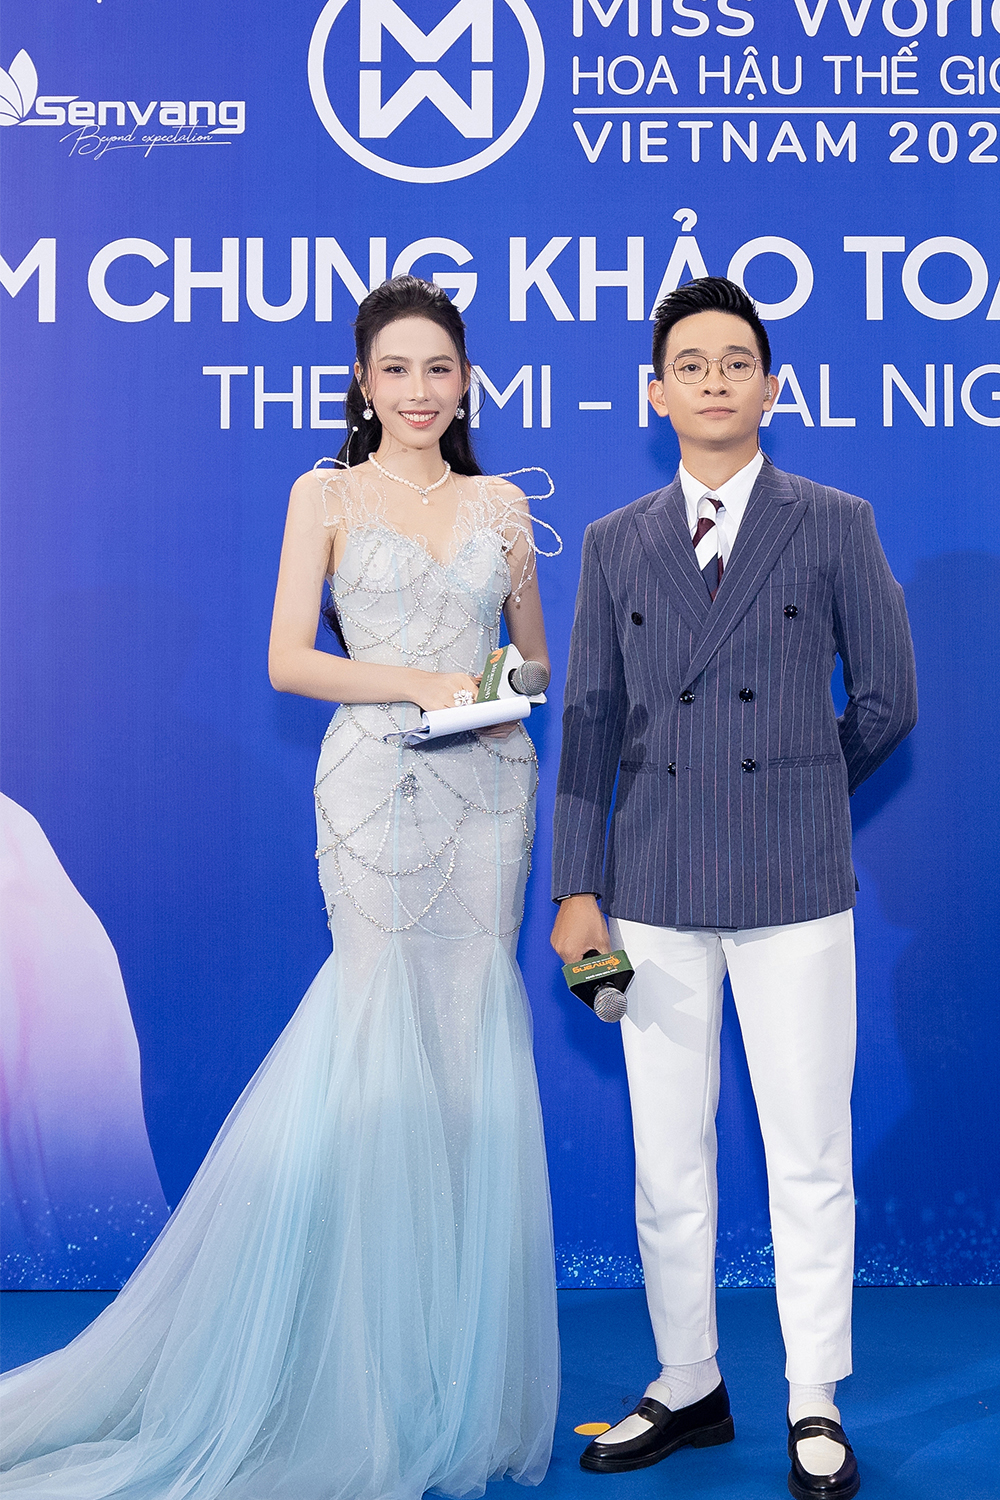 Harper's Bazaar_Thảm đỏ chung khảo Miss World Vietnam 2023_05